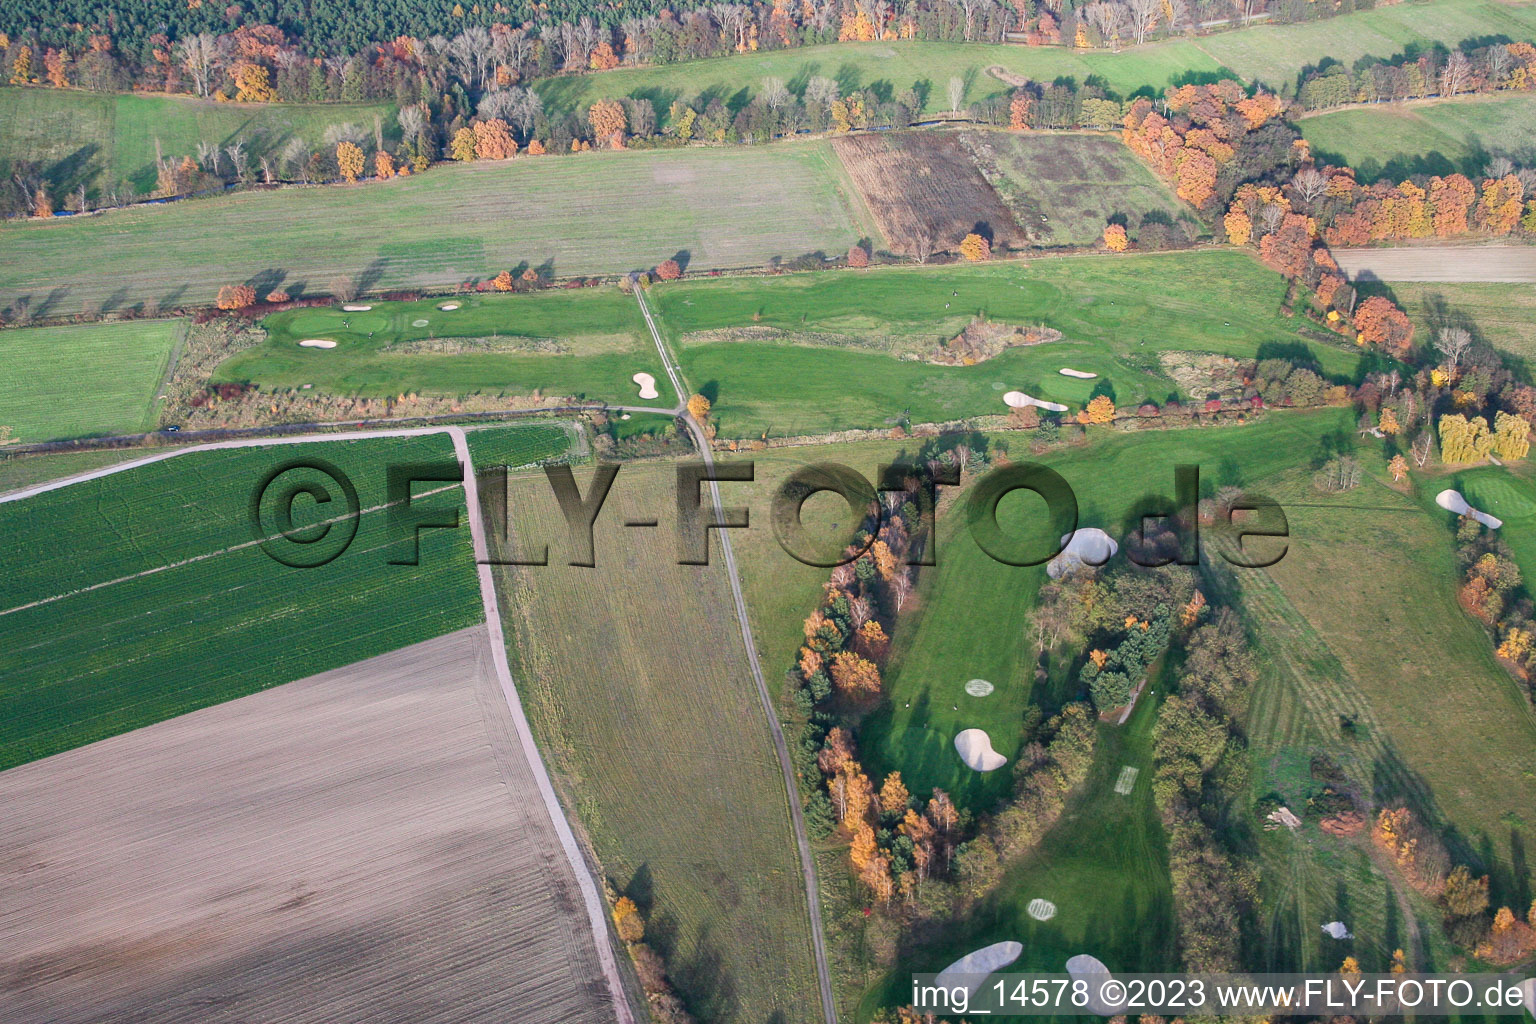 Vue aérienne de Terrain de golf à Geinsheim dans le département Rhénanie-Palatinat, Allemagne